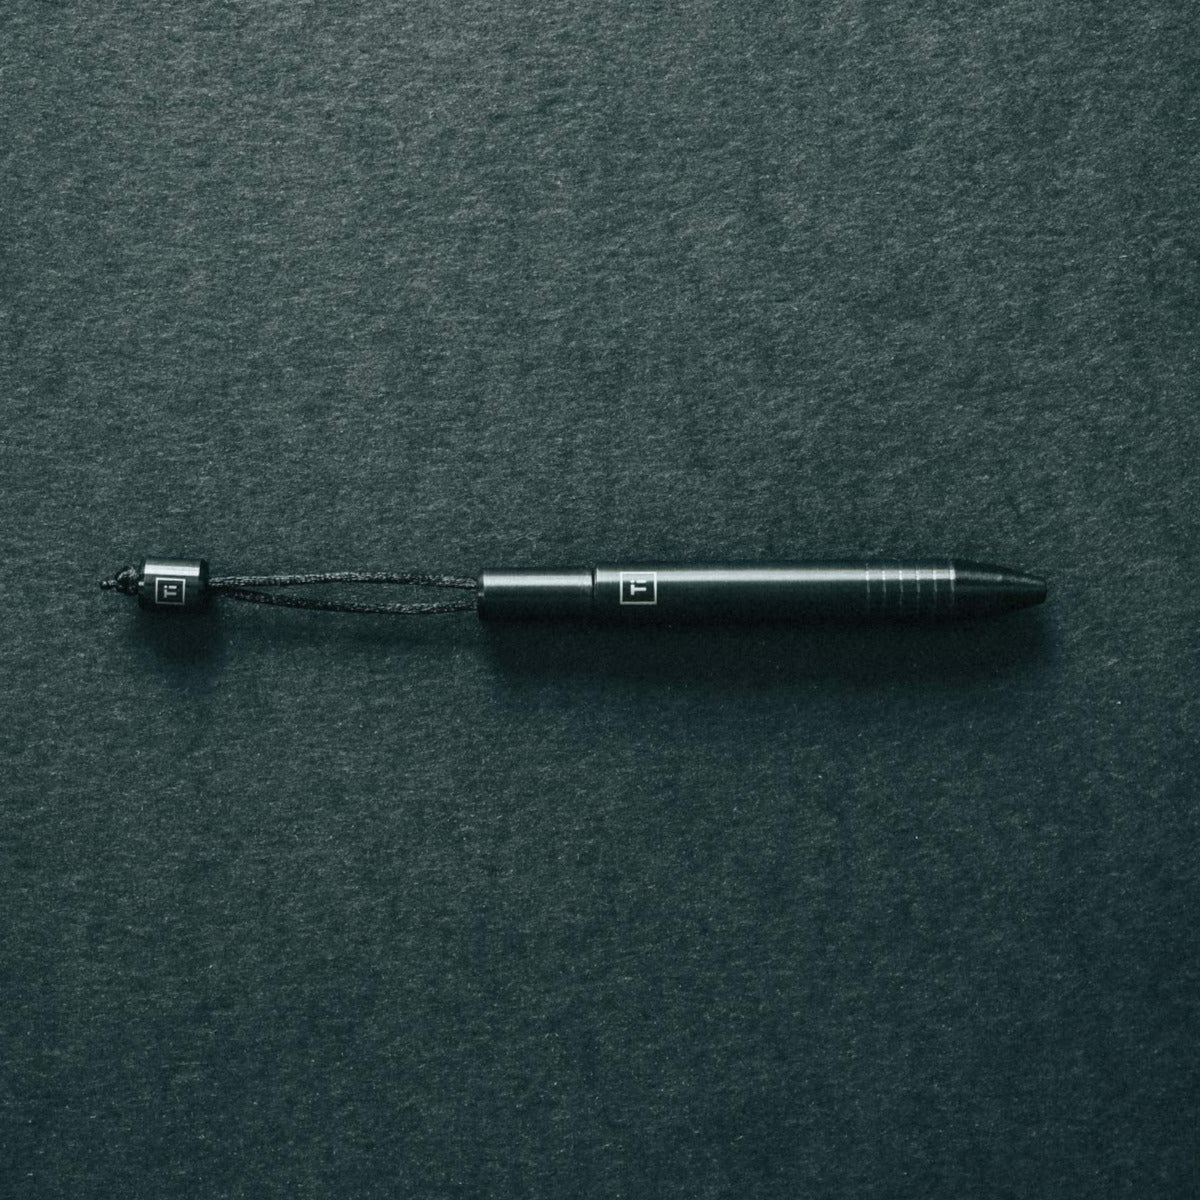 Big Idea Design – Ti-Mini-Stift und Messing-/Kupfer-Mini-Stift